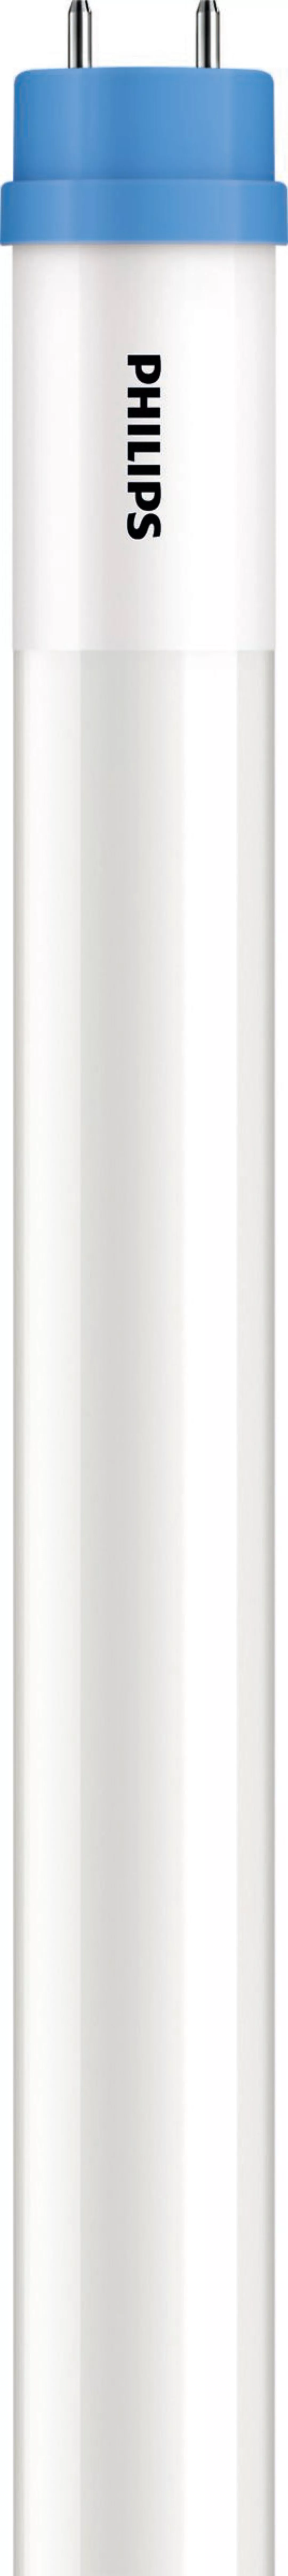 Philips Lighting LED-Tube T8 KVG/VVG G13, 840, 1200mm CoreLEDtube#44807000 günstig online kaufen